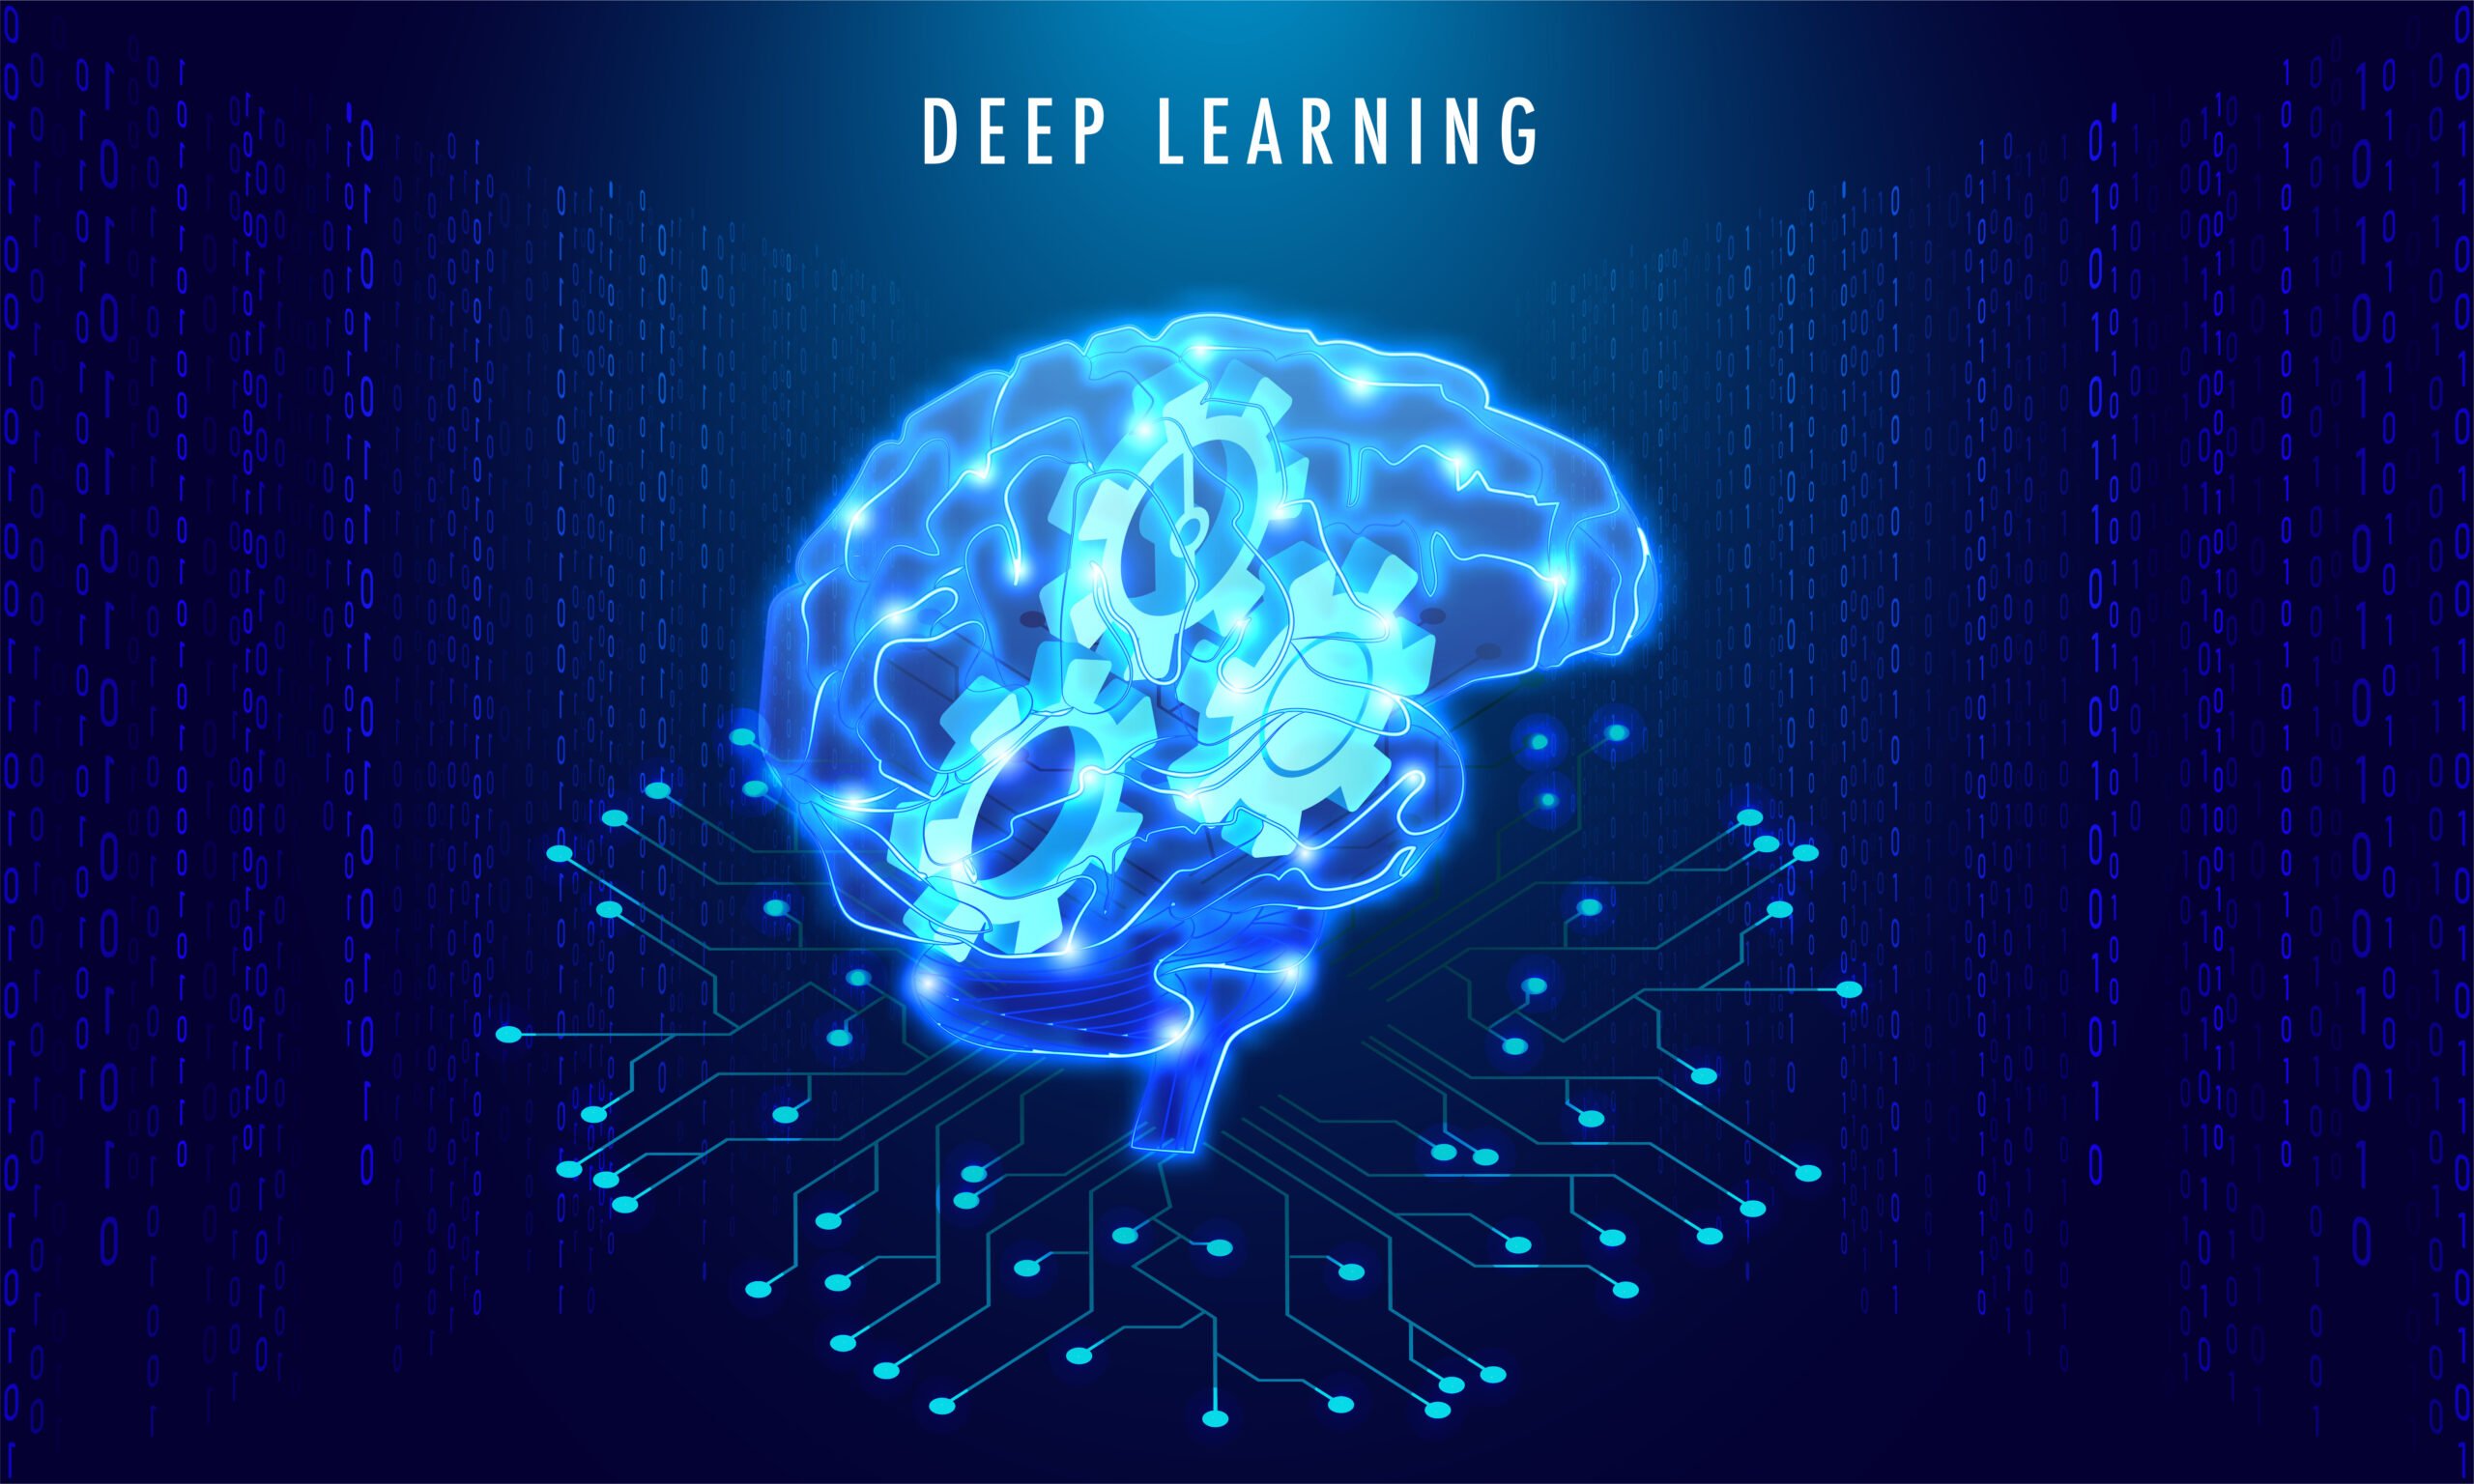 การใช้ Deep Learning ในการเขียนโค้ดช่วยให้นักพัฒนาซอฟต์แวร์โดดเด่นได้หรือไม่